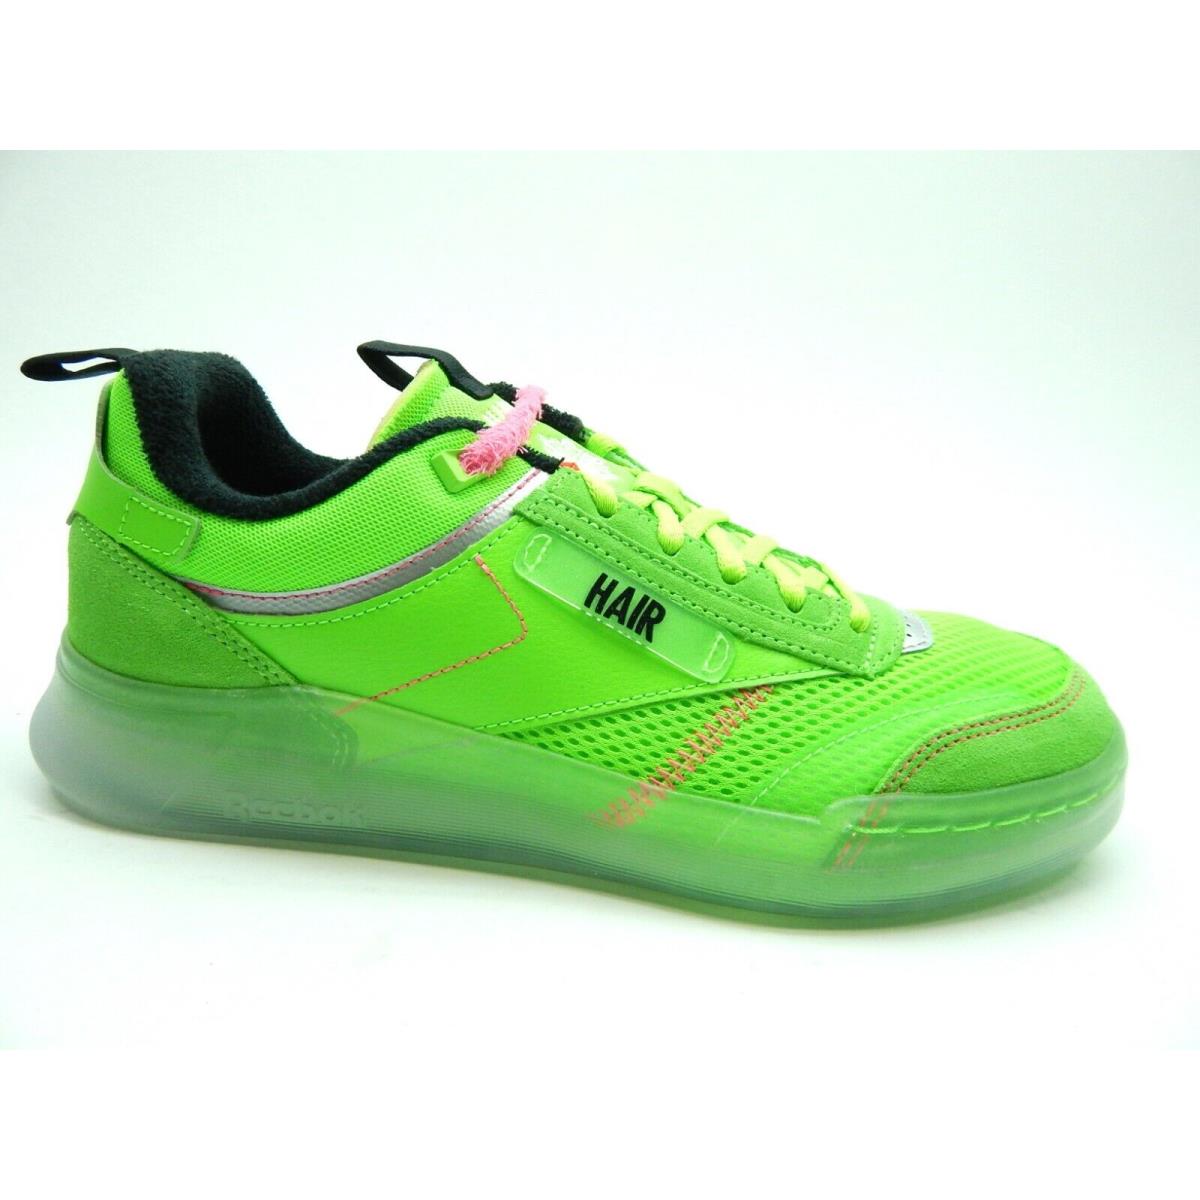 Reebok Men`s Club C Legacy Green Black GY5329 Shoes Size 8.5